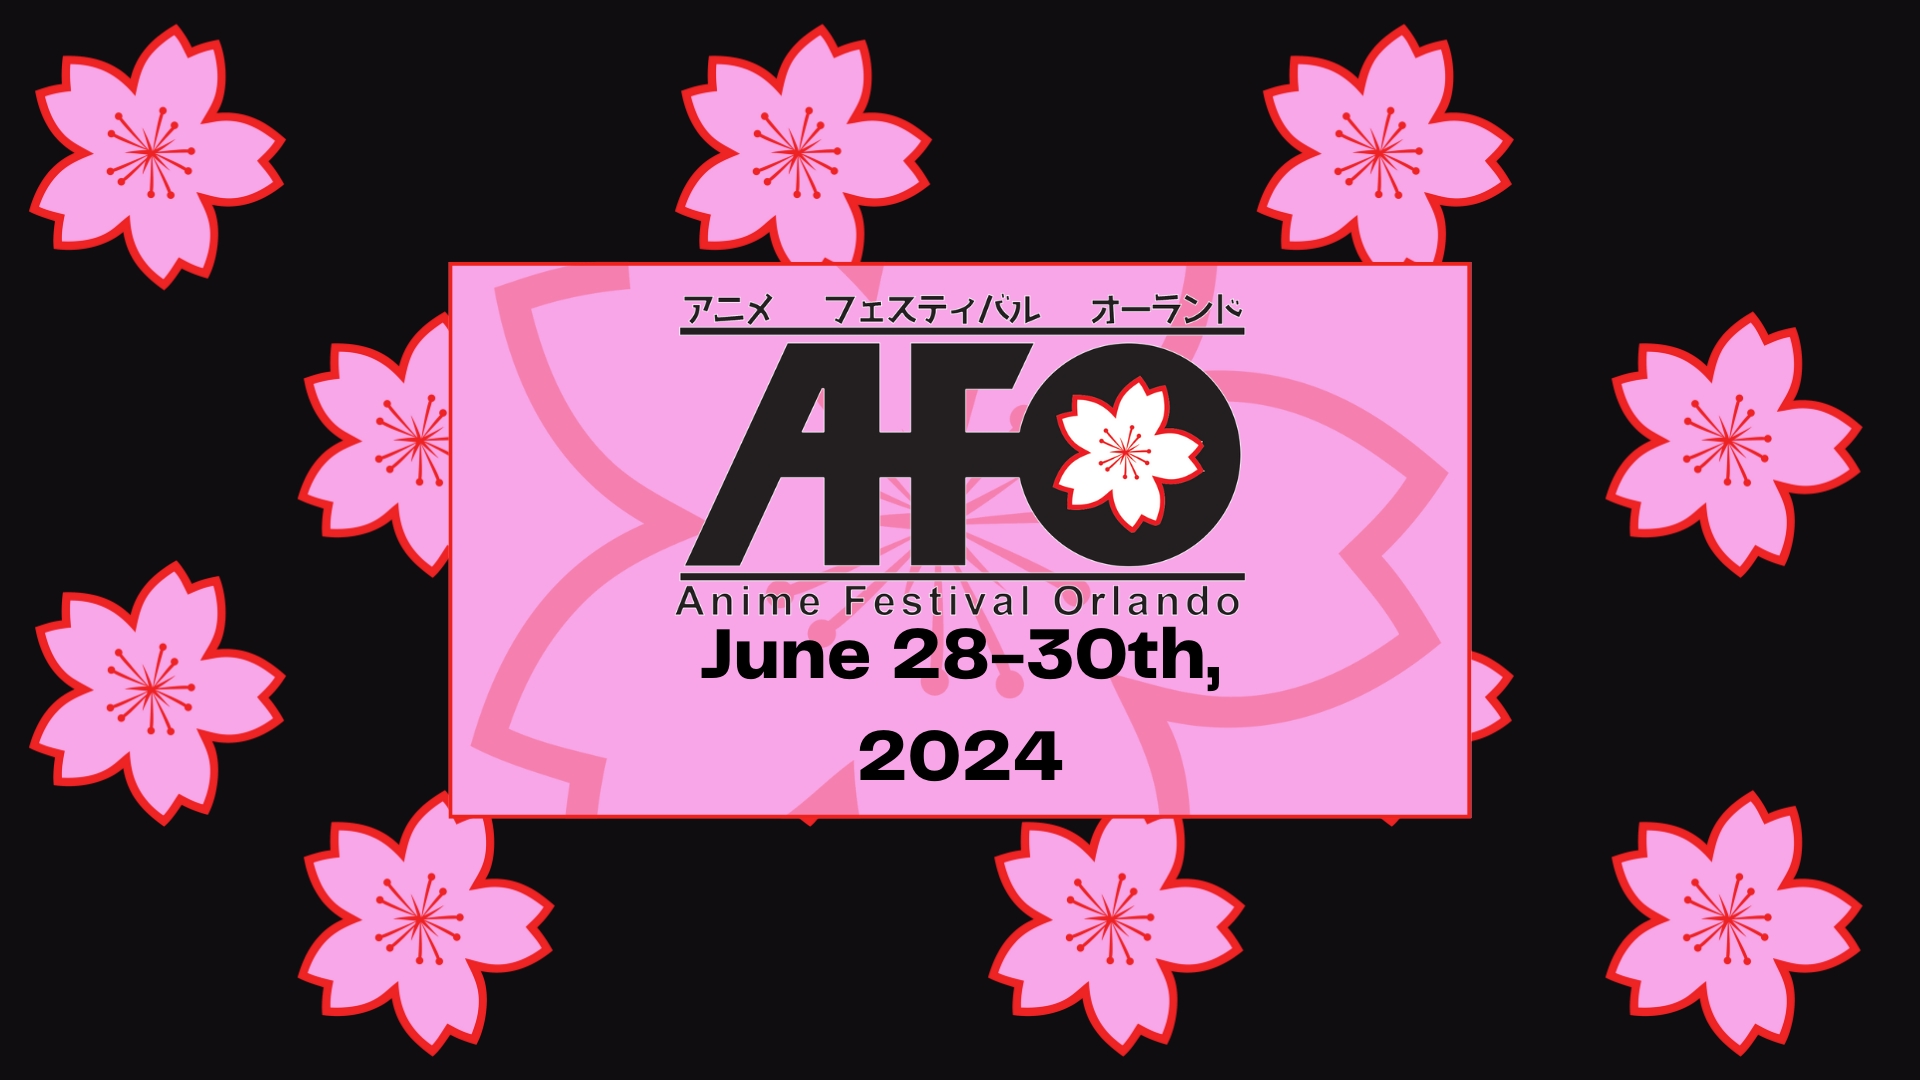 Anime Festival Orlando 2024 cover image